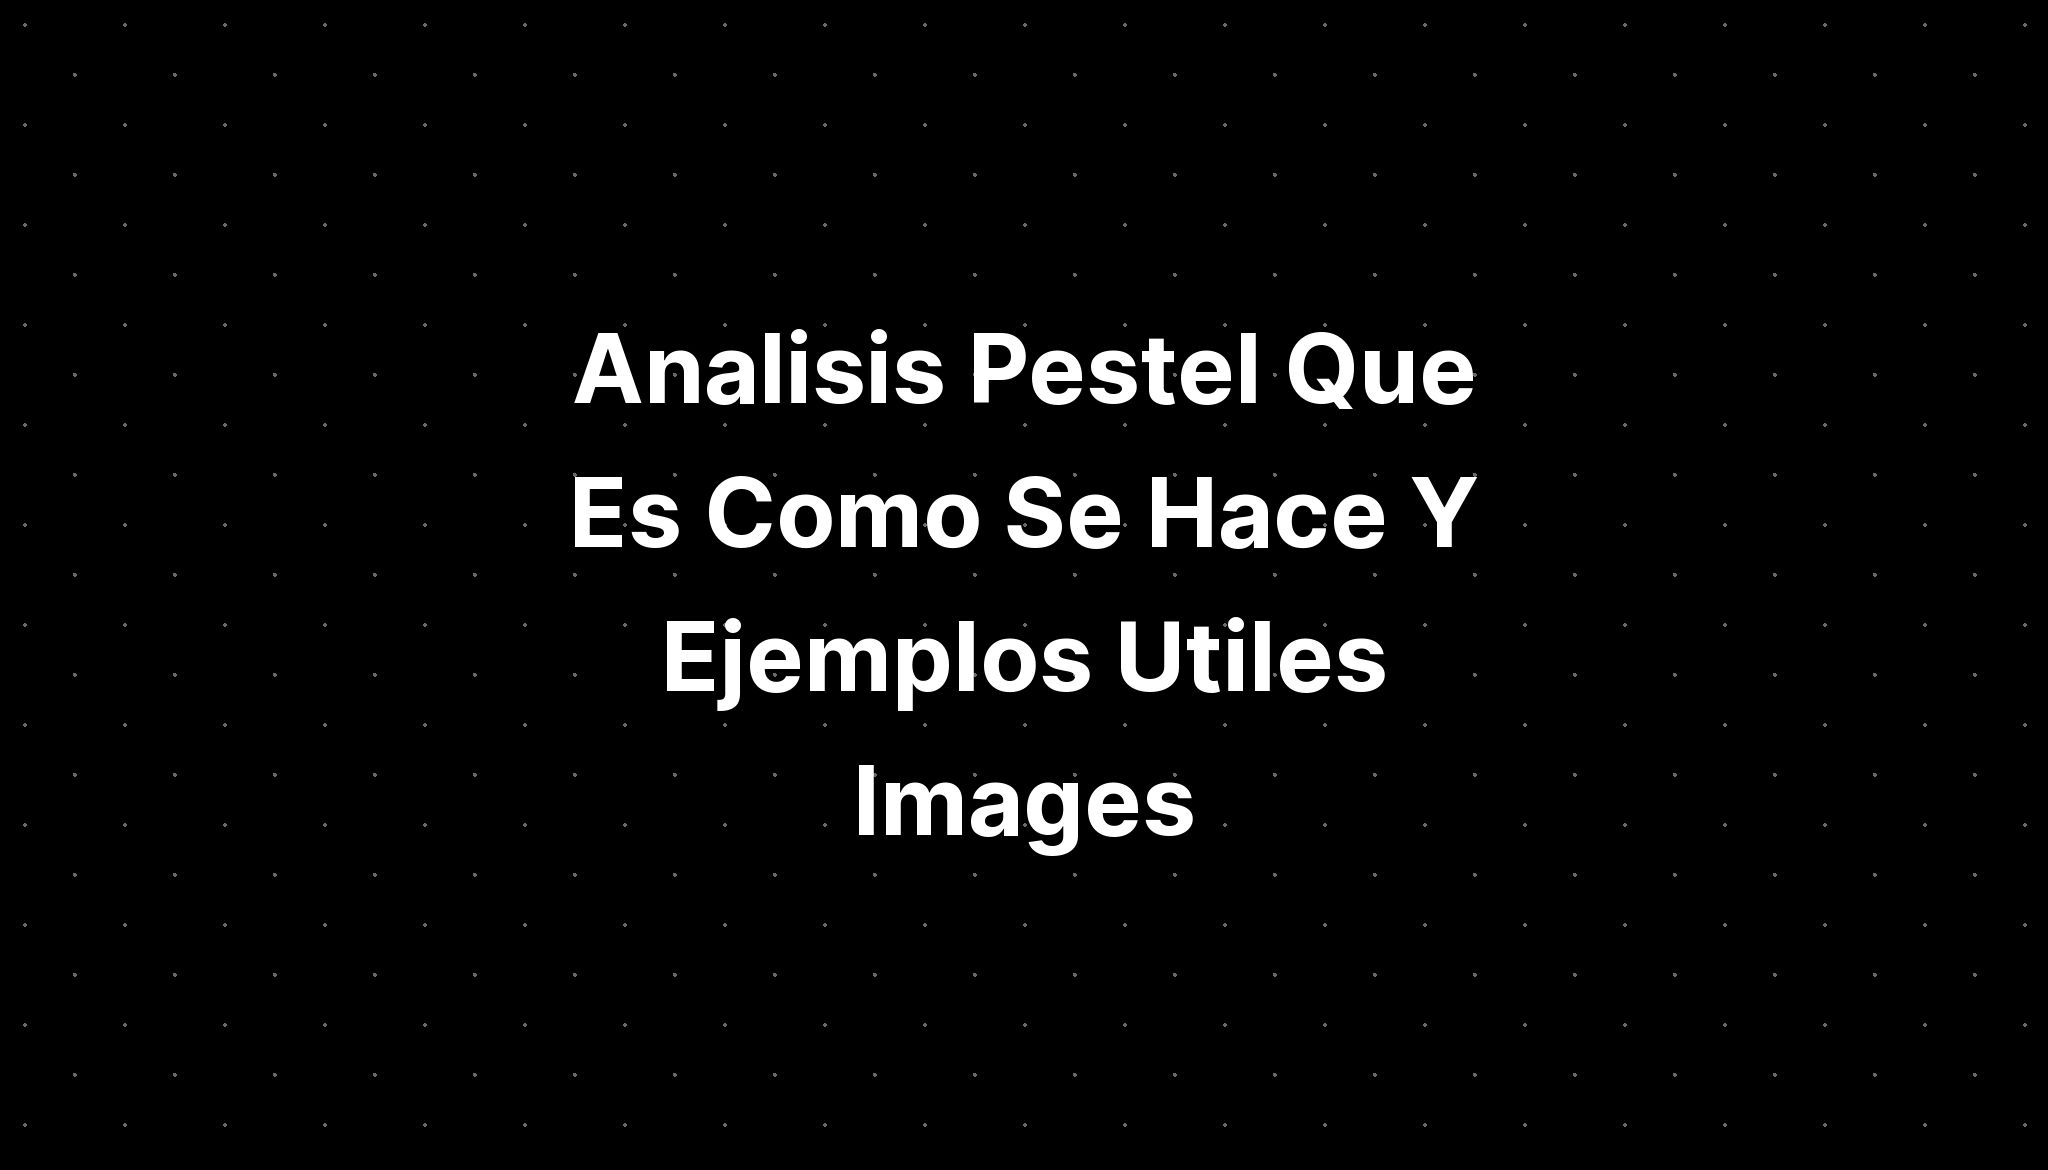 Analisis Pestel Que Es Como Se Hace Y Ejemplos Utiles Images Imagesee